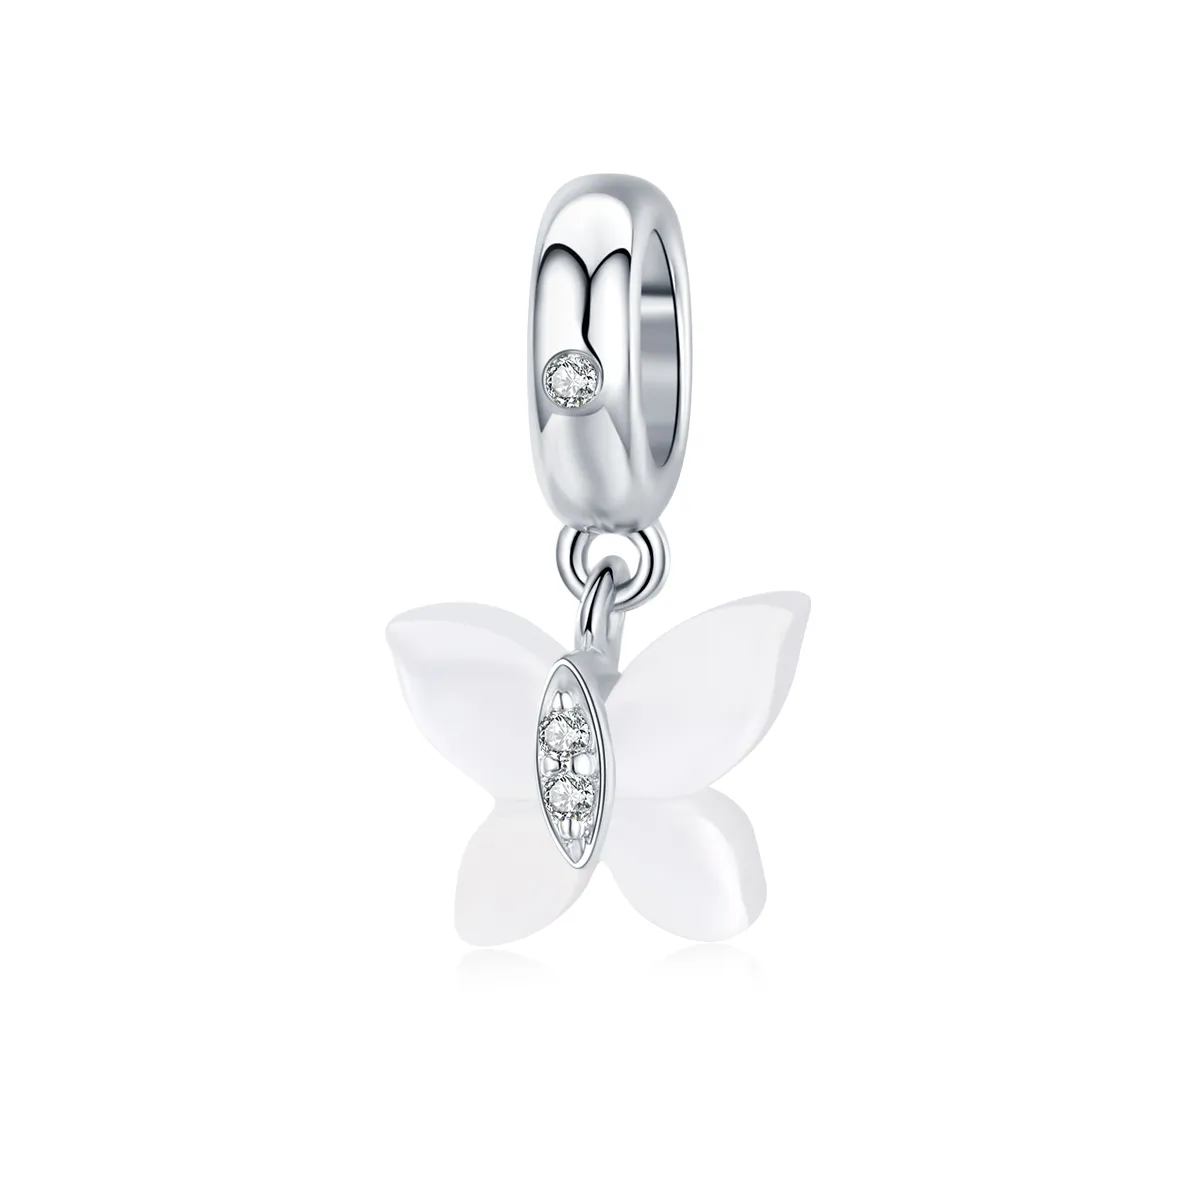 Talisman pandantiv Tip Pandora cu Fluture din argint - SCC1414